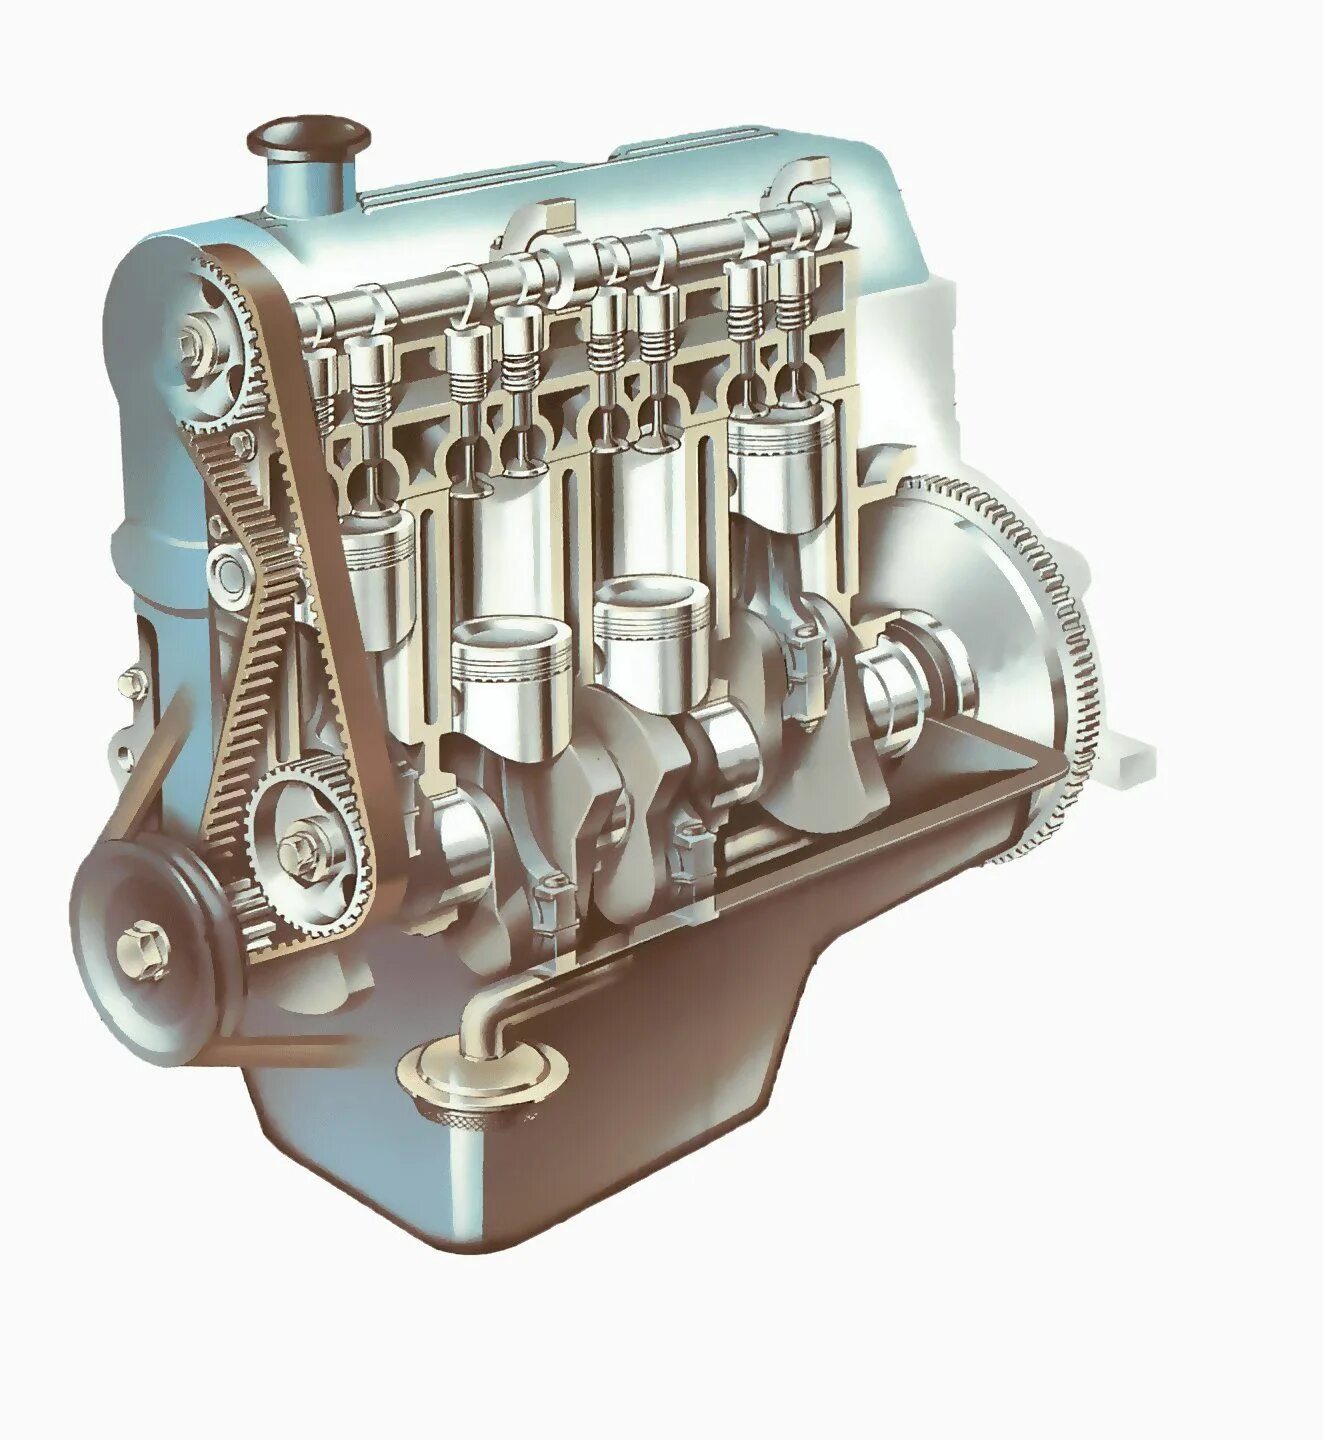 Двигатель внутреннего сгорания автомобиля схема. Строение ДВС автомобиля схема. Из чего состоит двигатель внутреннего сгорания. Нижневальный в8. Структура двигателя автомобиля